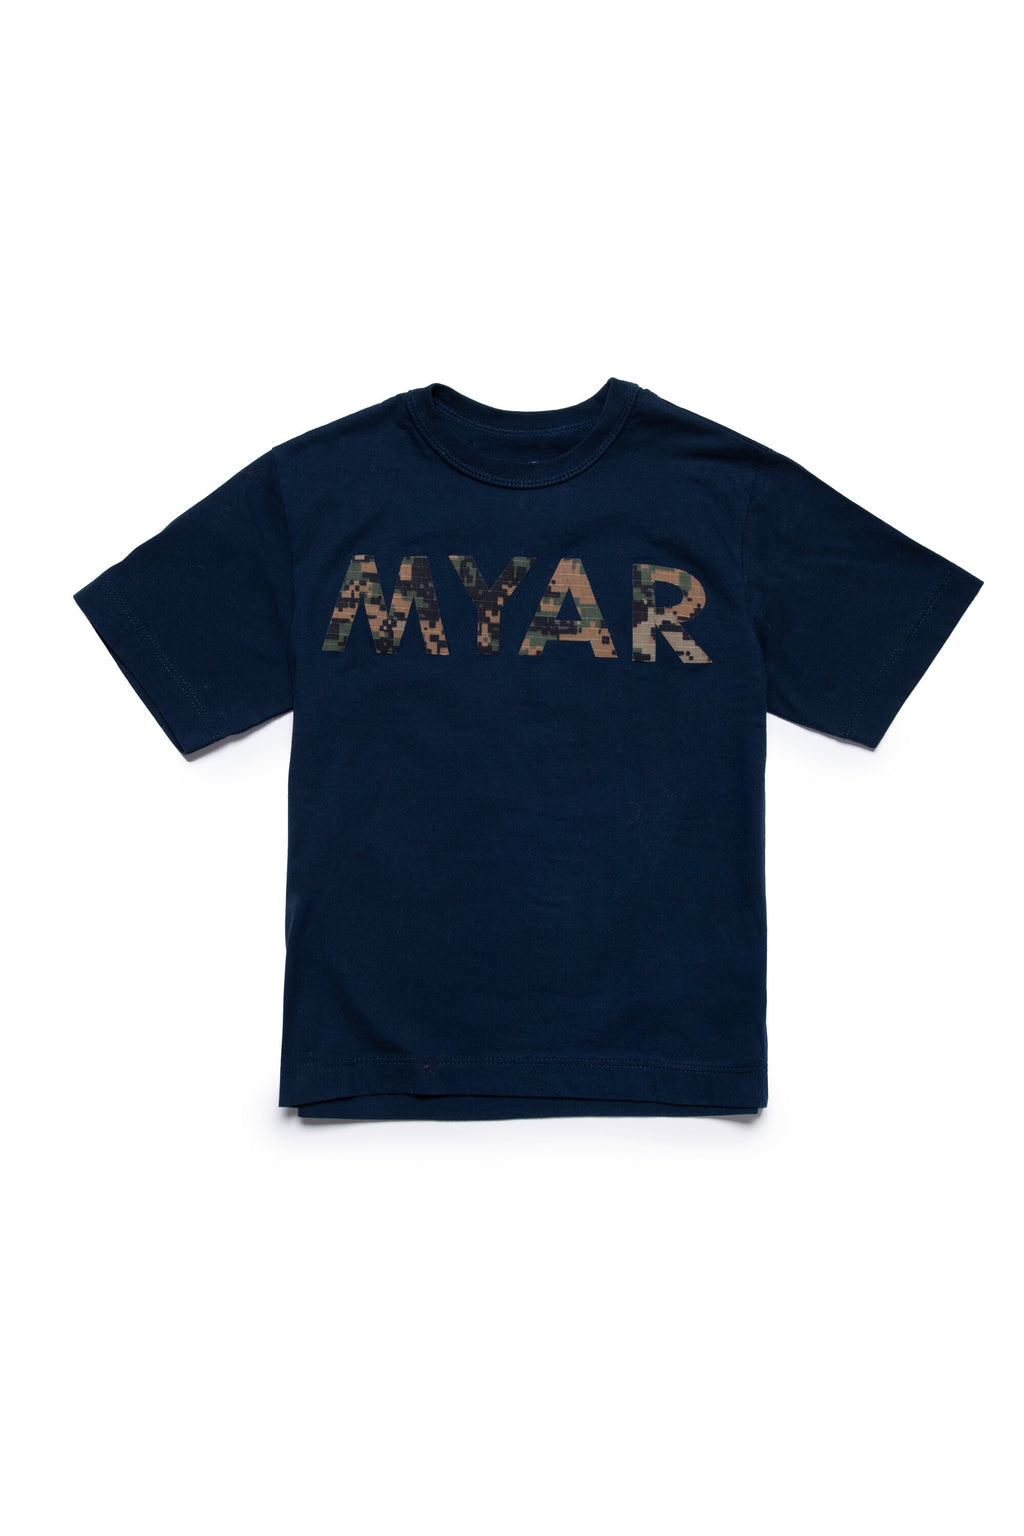 Camiseta en tejido Deadstock con logotipo MYAR